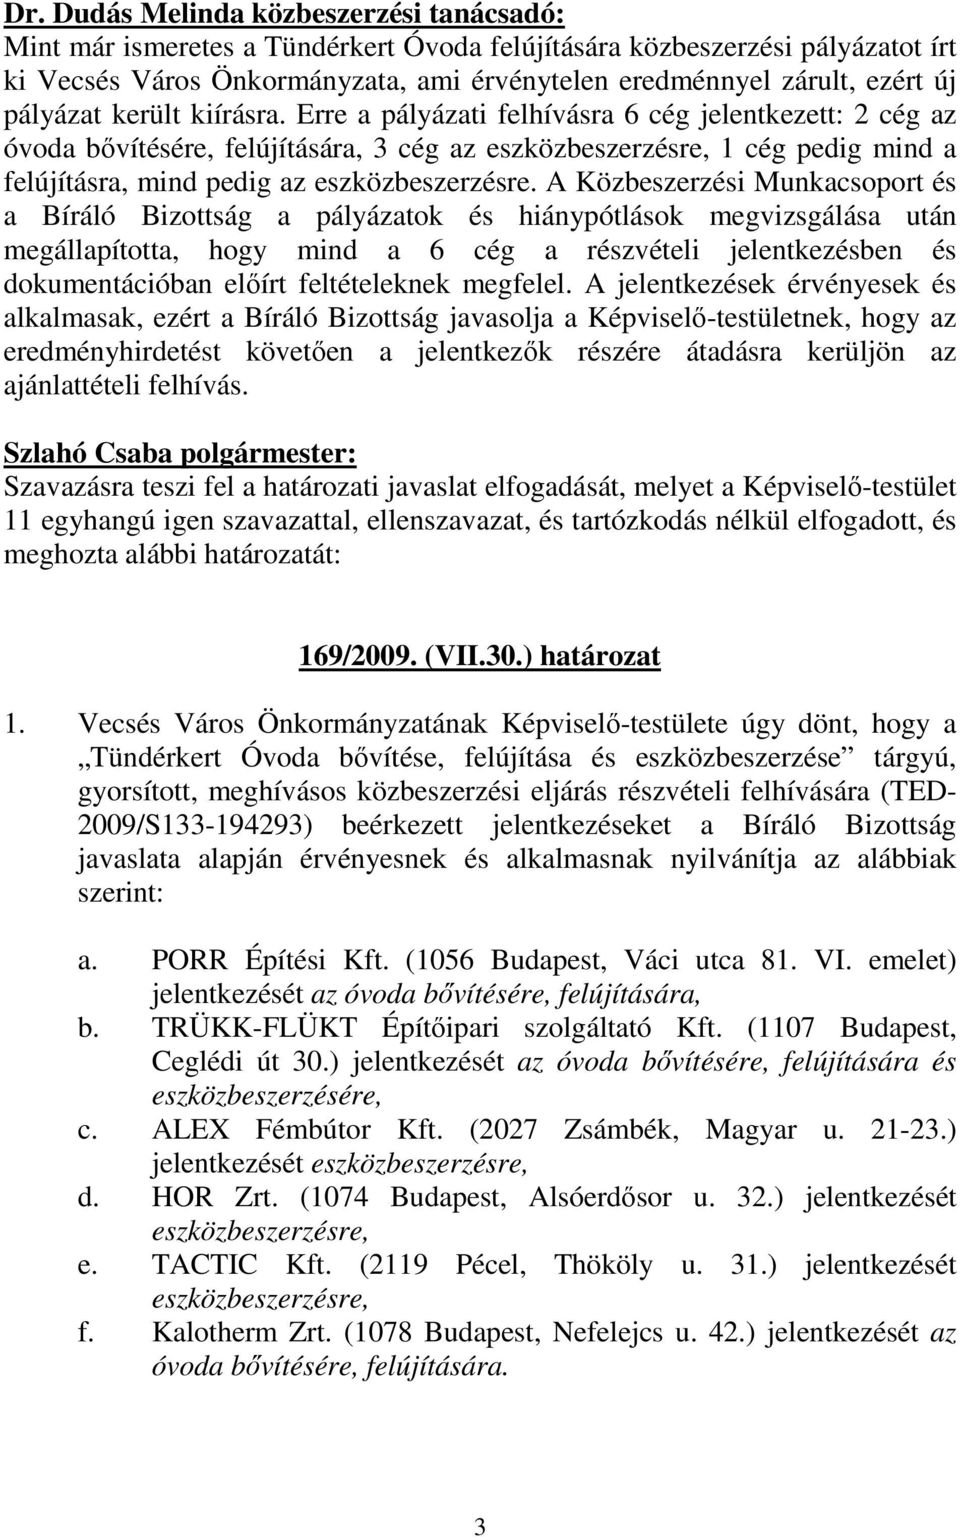 Erre a pályázati felhívásra 6 cég jelentkezett: 2 cég az óvoda bıvítésére, felújítására, 3 cég az eszközbeszerzésre, 1 cég pedig mind a felújításra, mind pedig az eszközbeszerzésre.